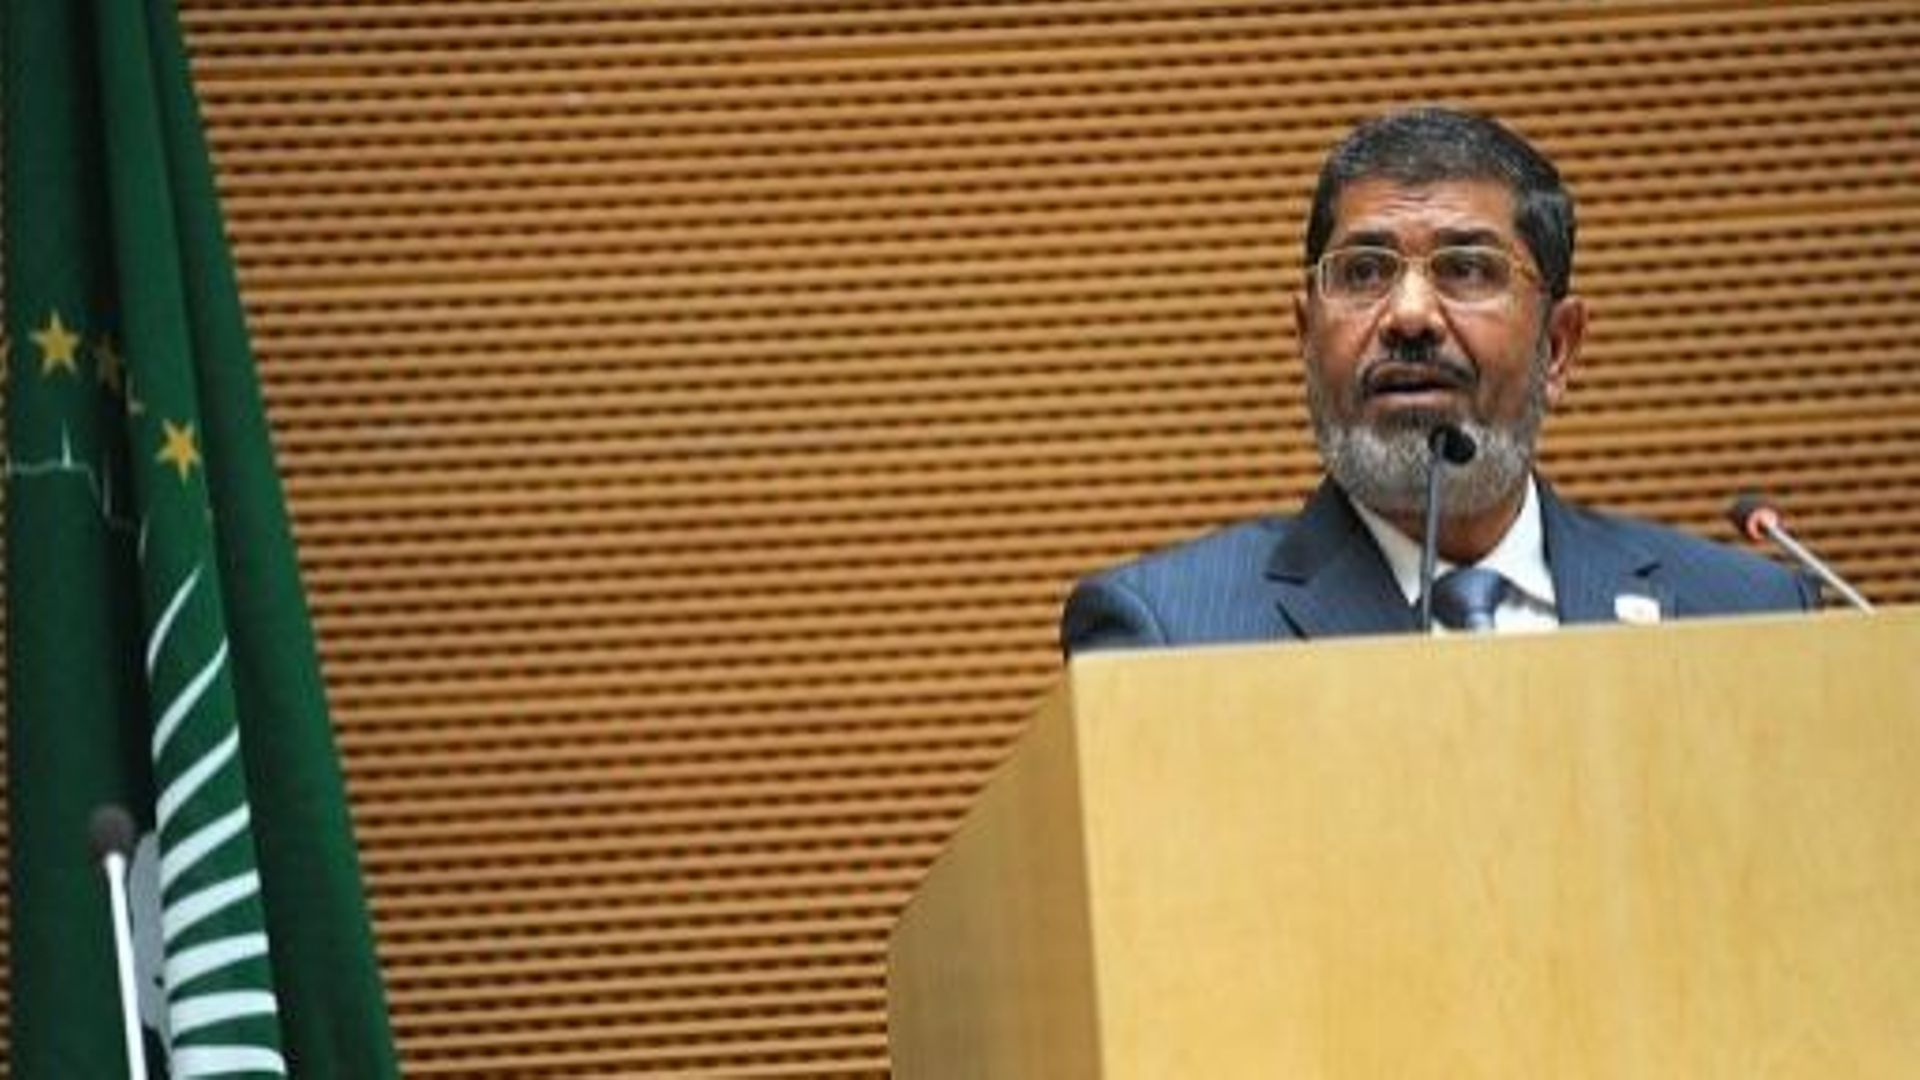 Le président égyptien Mohamed Morsi s'exprime le 15 juillet 2012 lors d'un sommet de l'Union africaine à Addis-Abeba